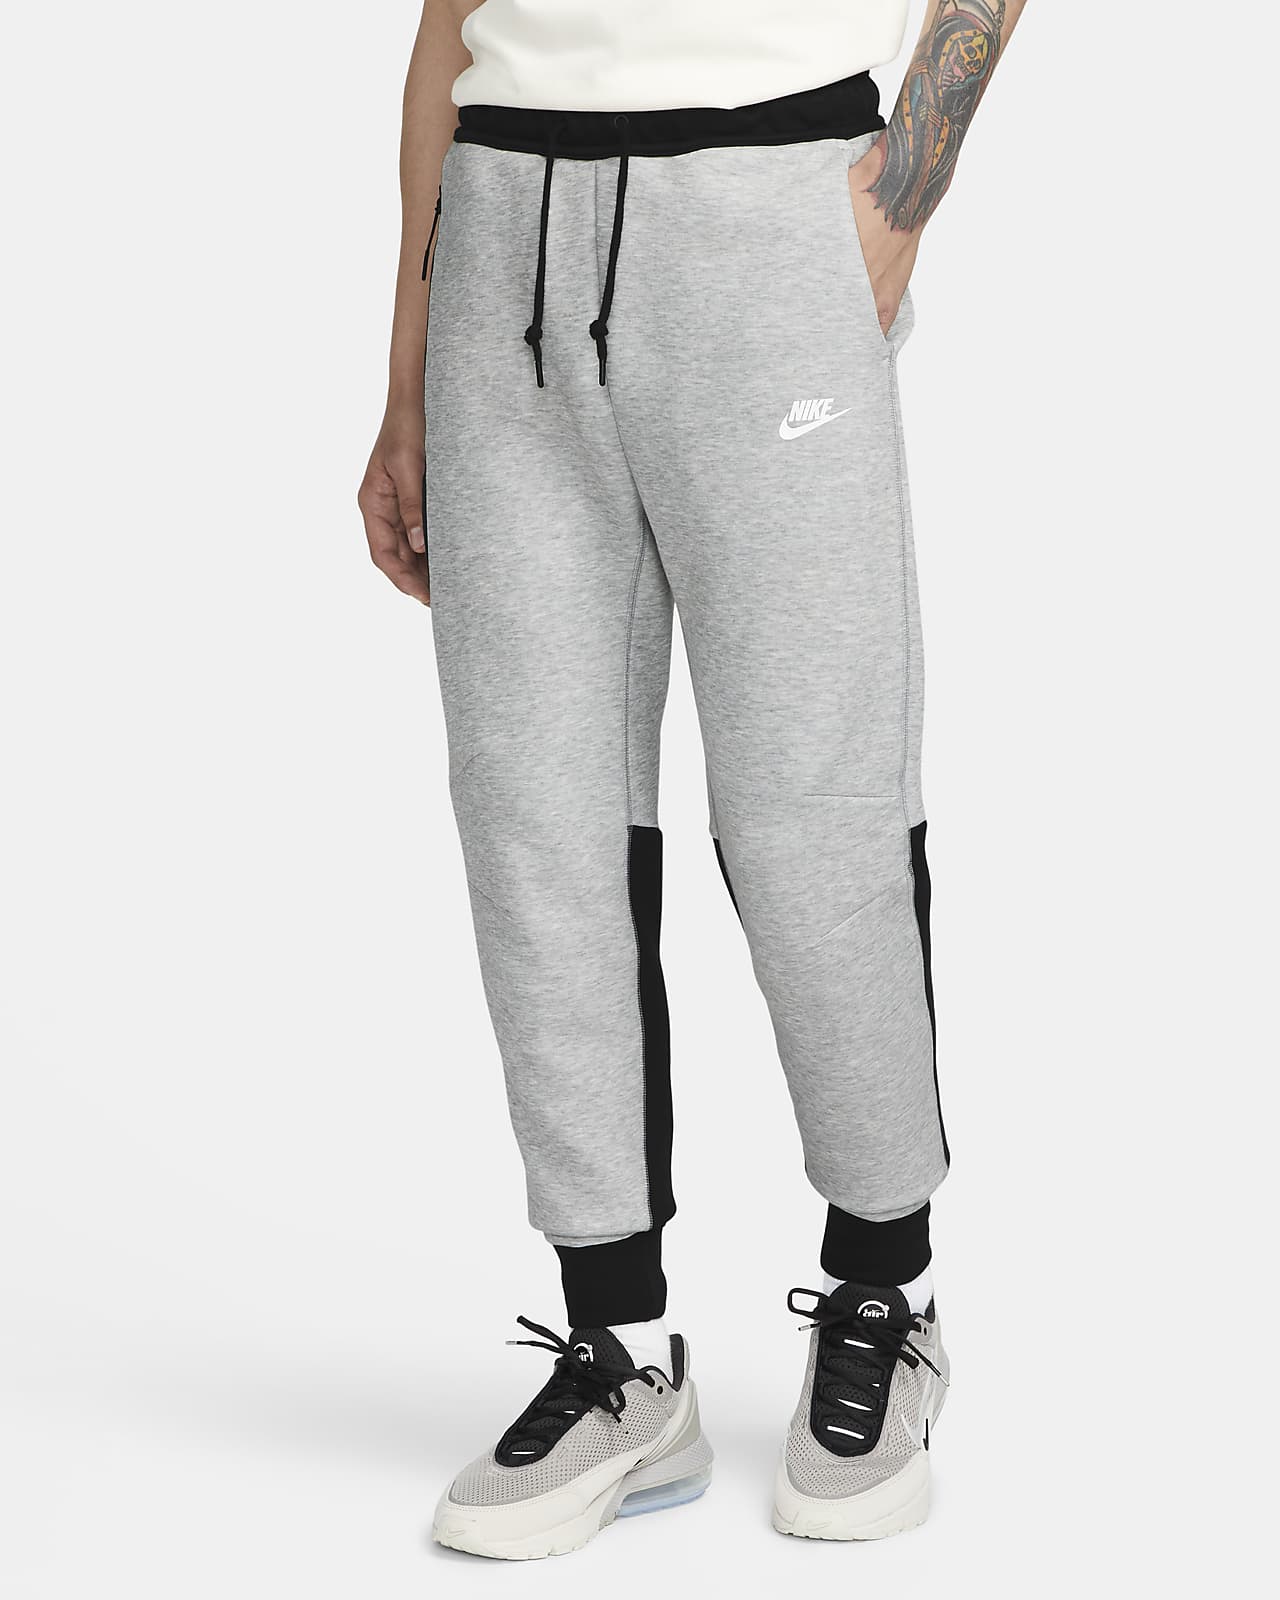 Nike Sportswear Tech Fleece Joggingbroek voor heren